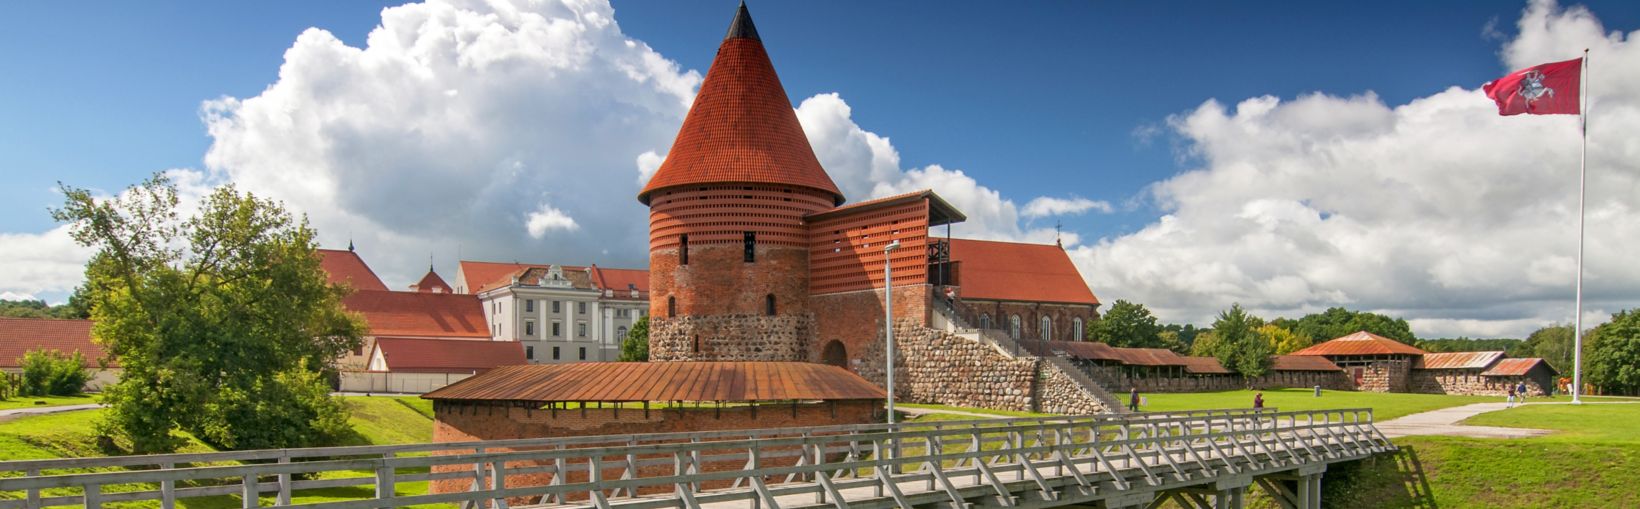 Kaunas Slot, bygget i midten af det 14. århundrede i gotisk stil, Kaunas, Litauen.